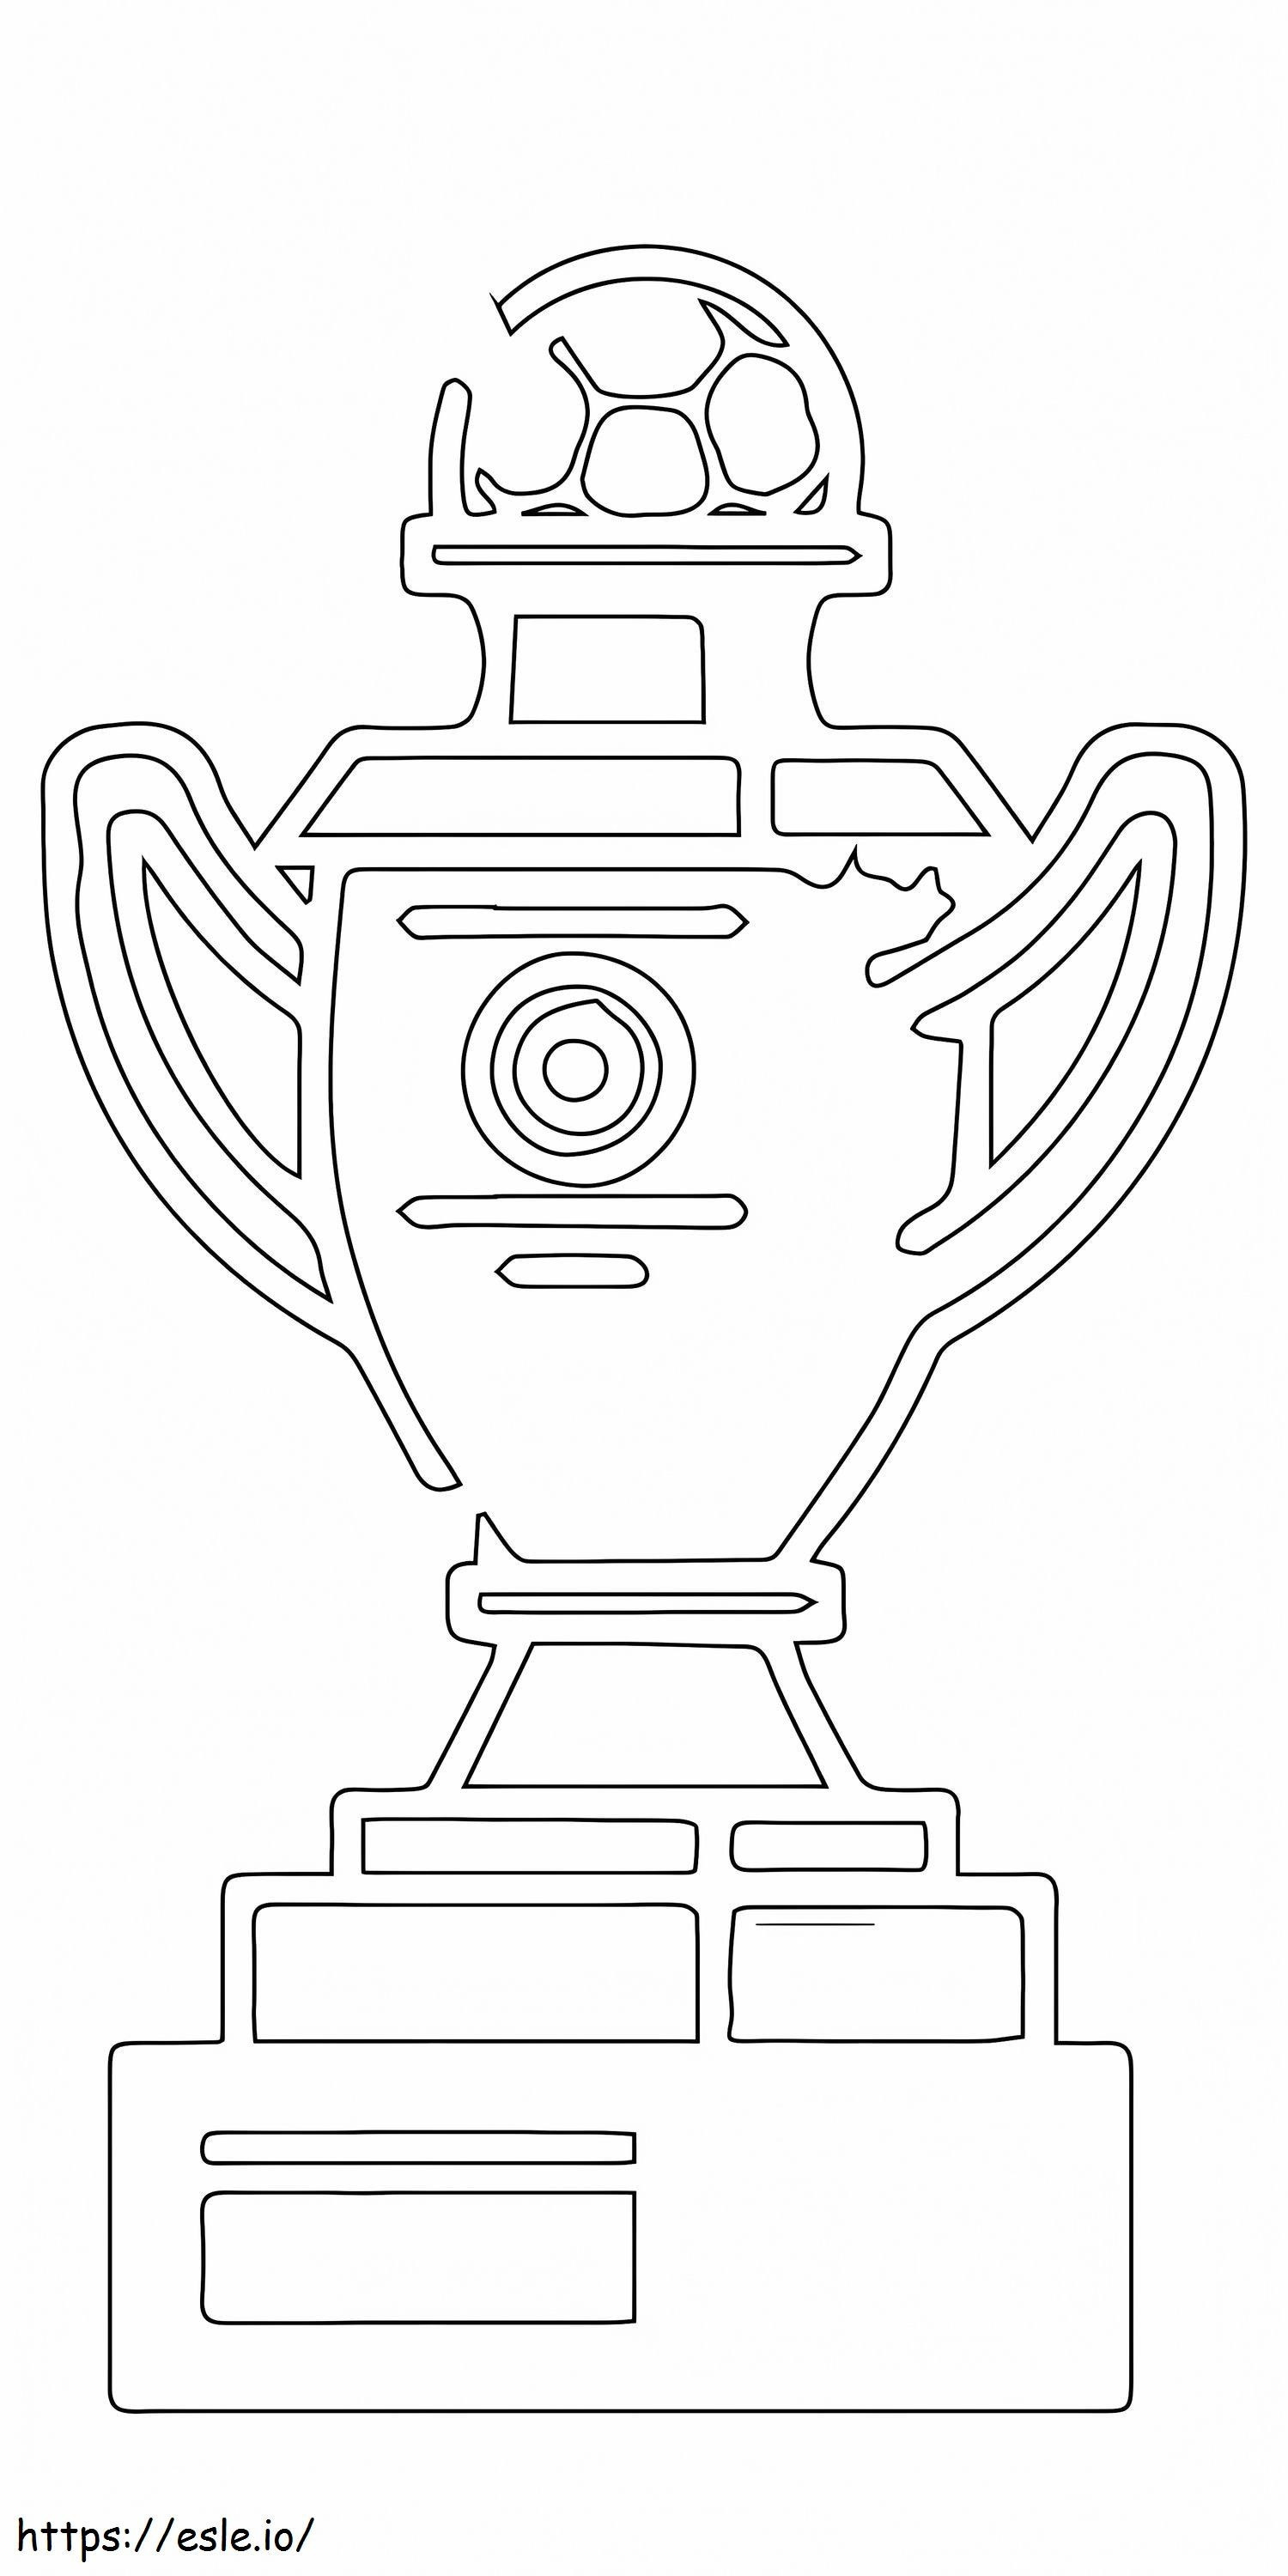 Trofeo della Coppa del mondo di calcio da colorare